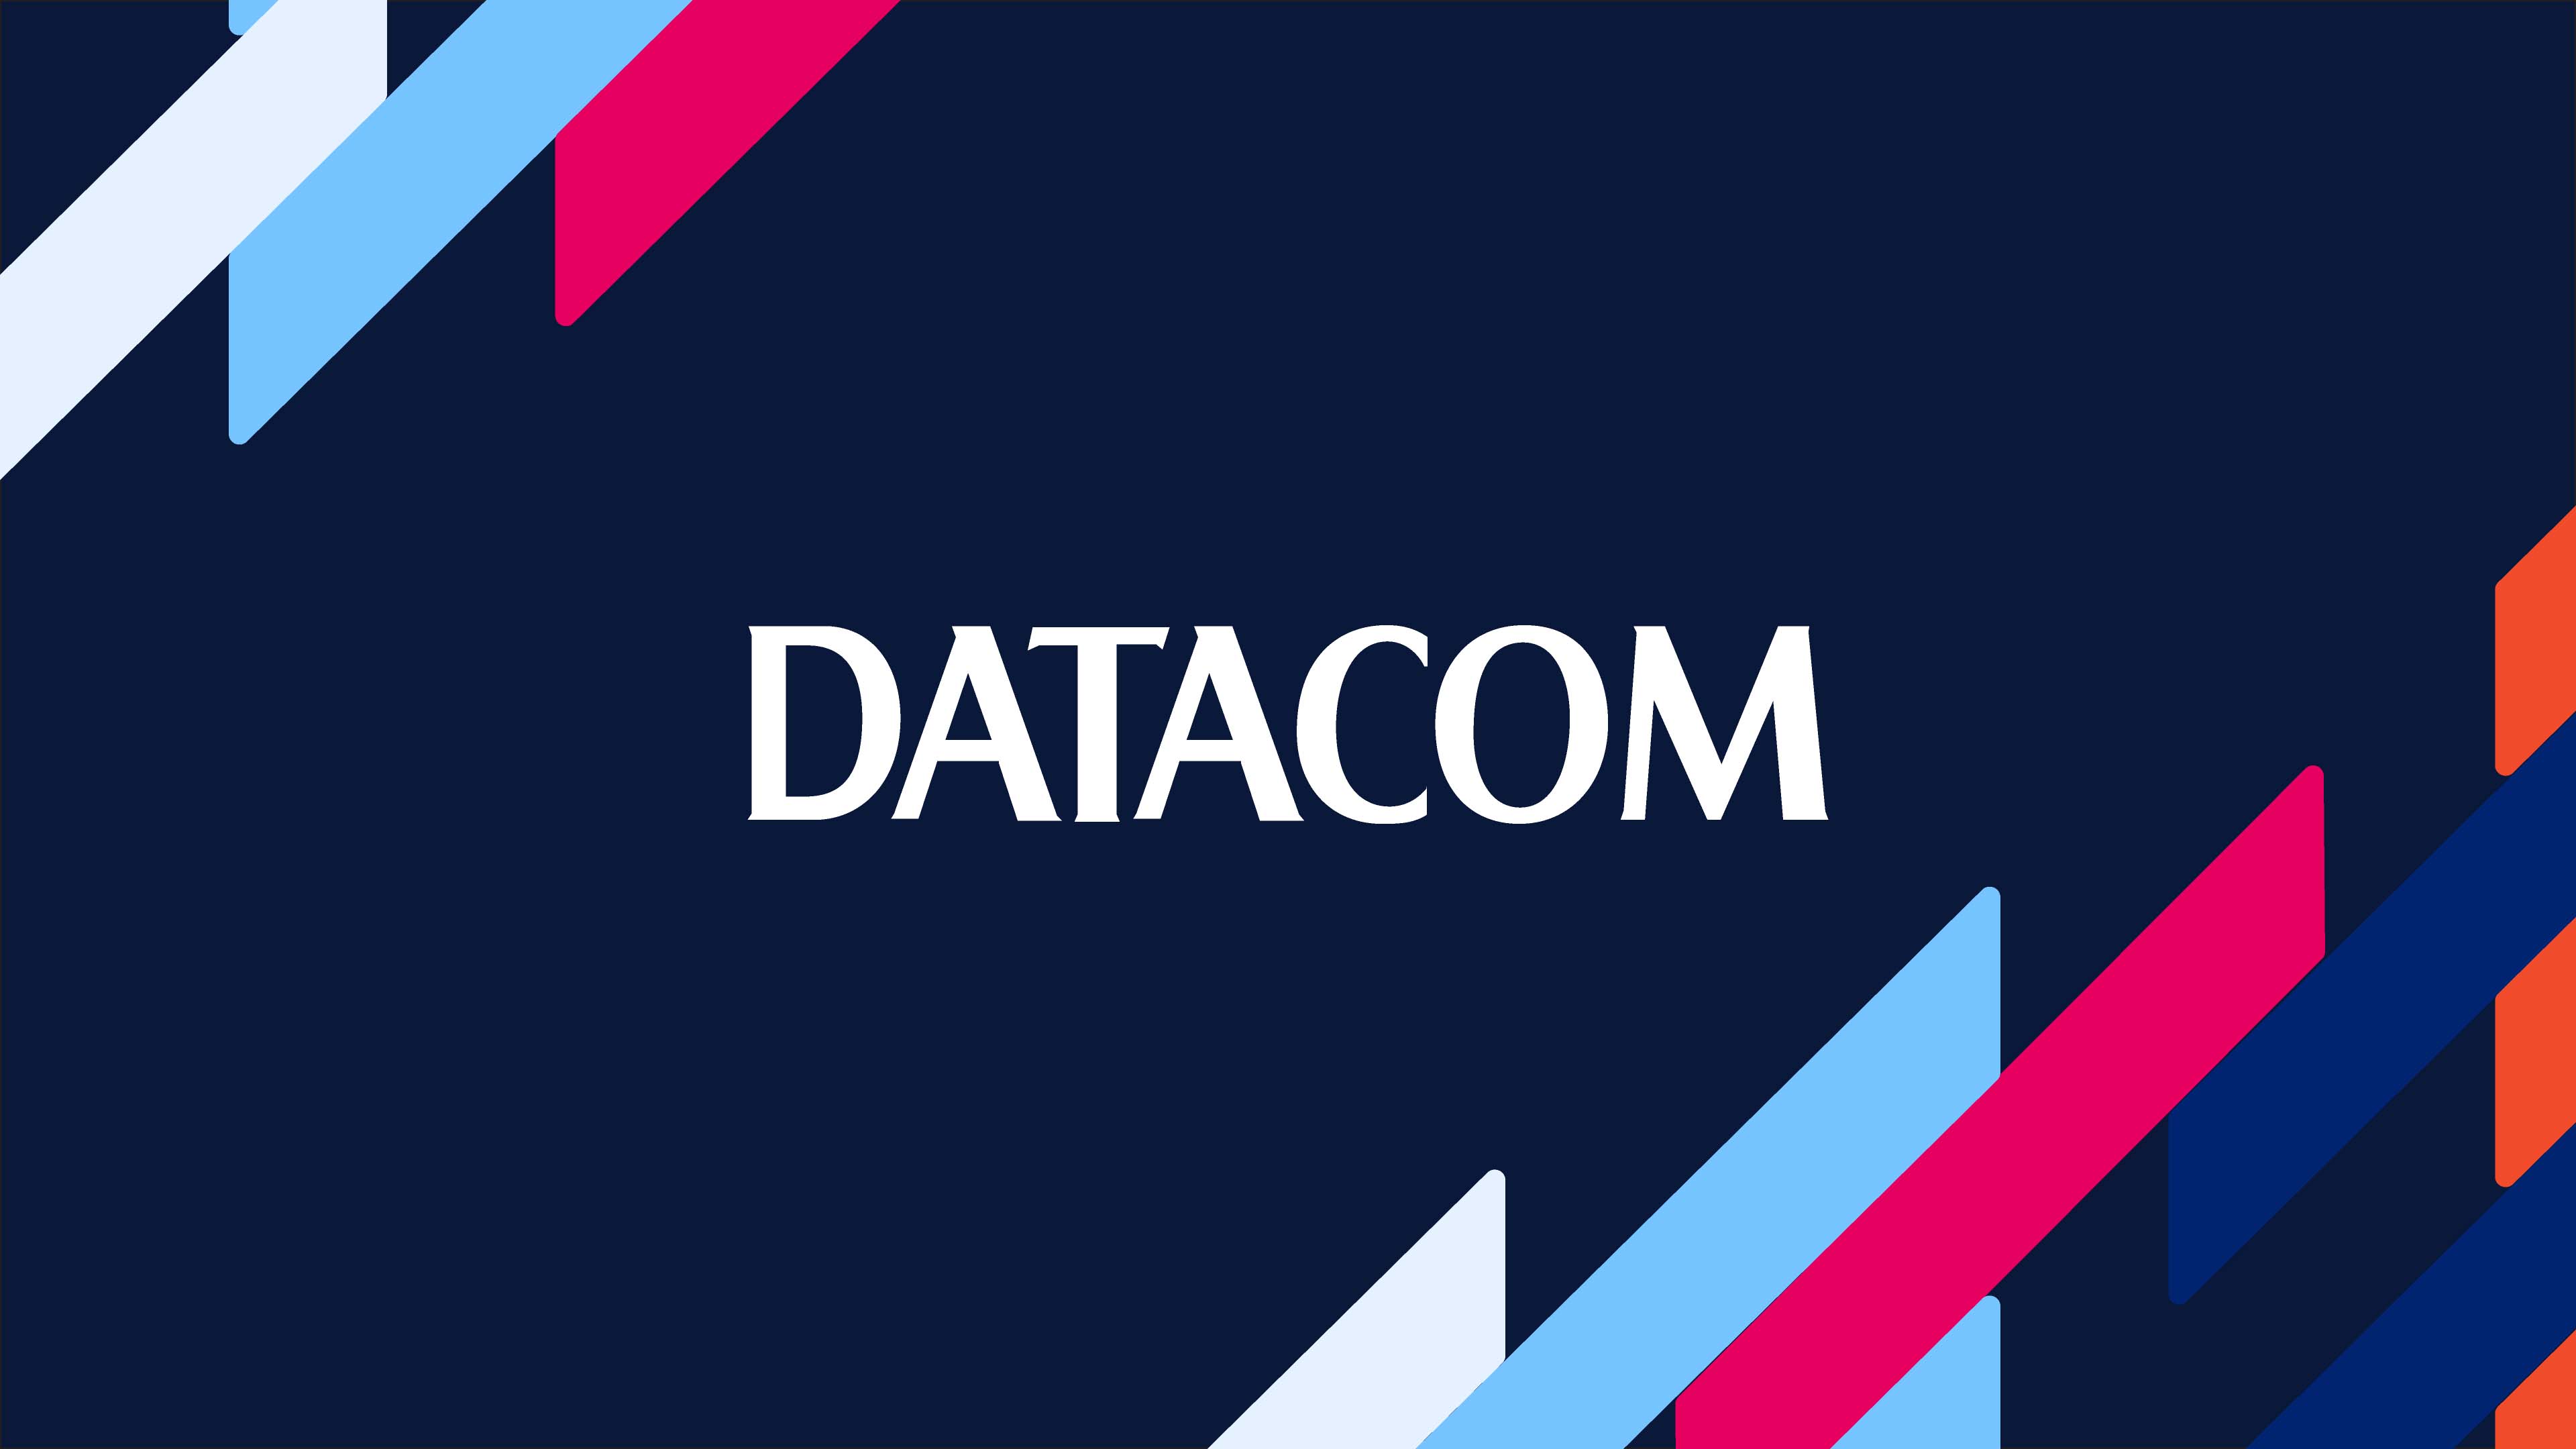 The Datacom logo surrounded by Datacom brand elements